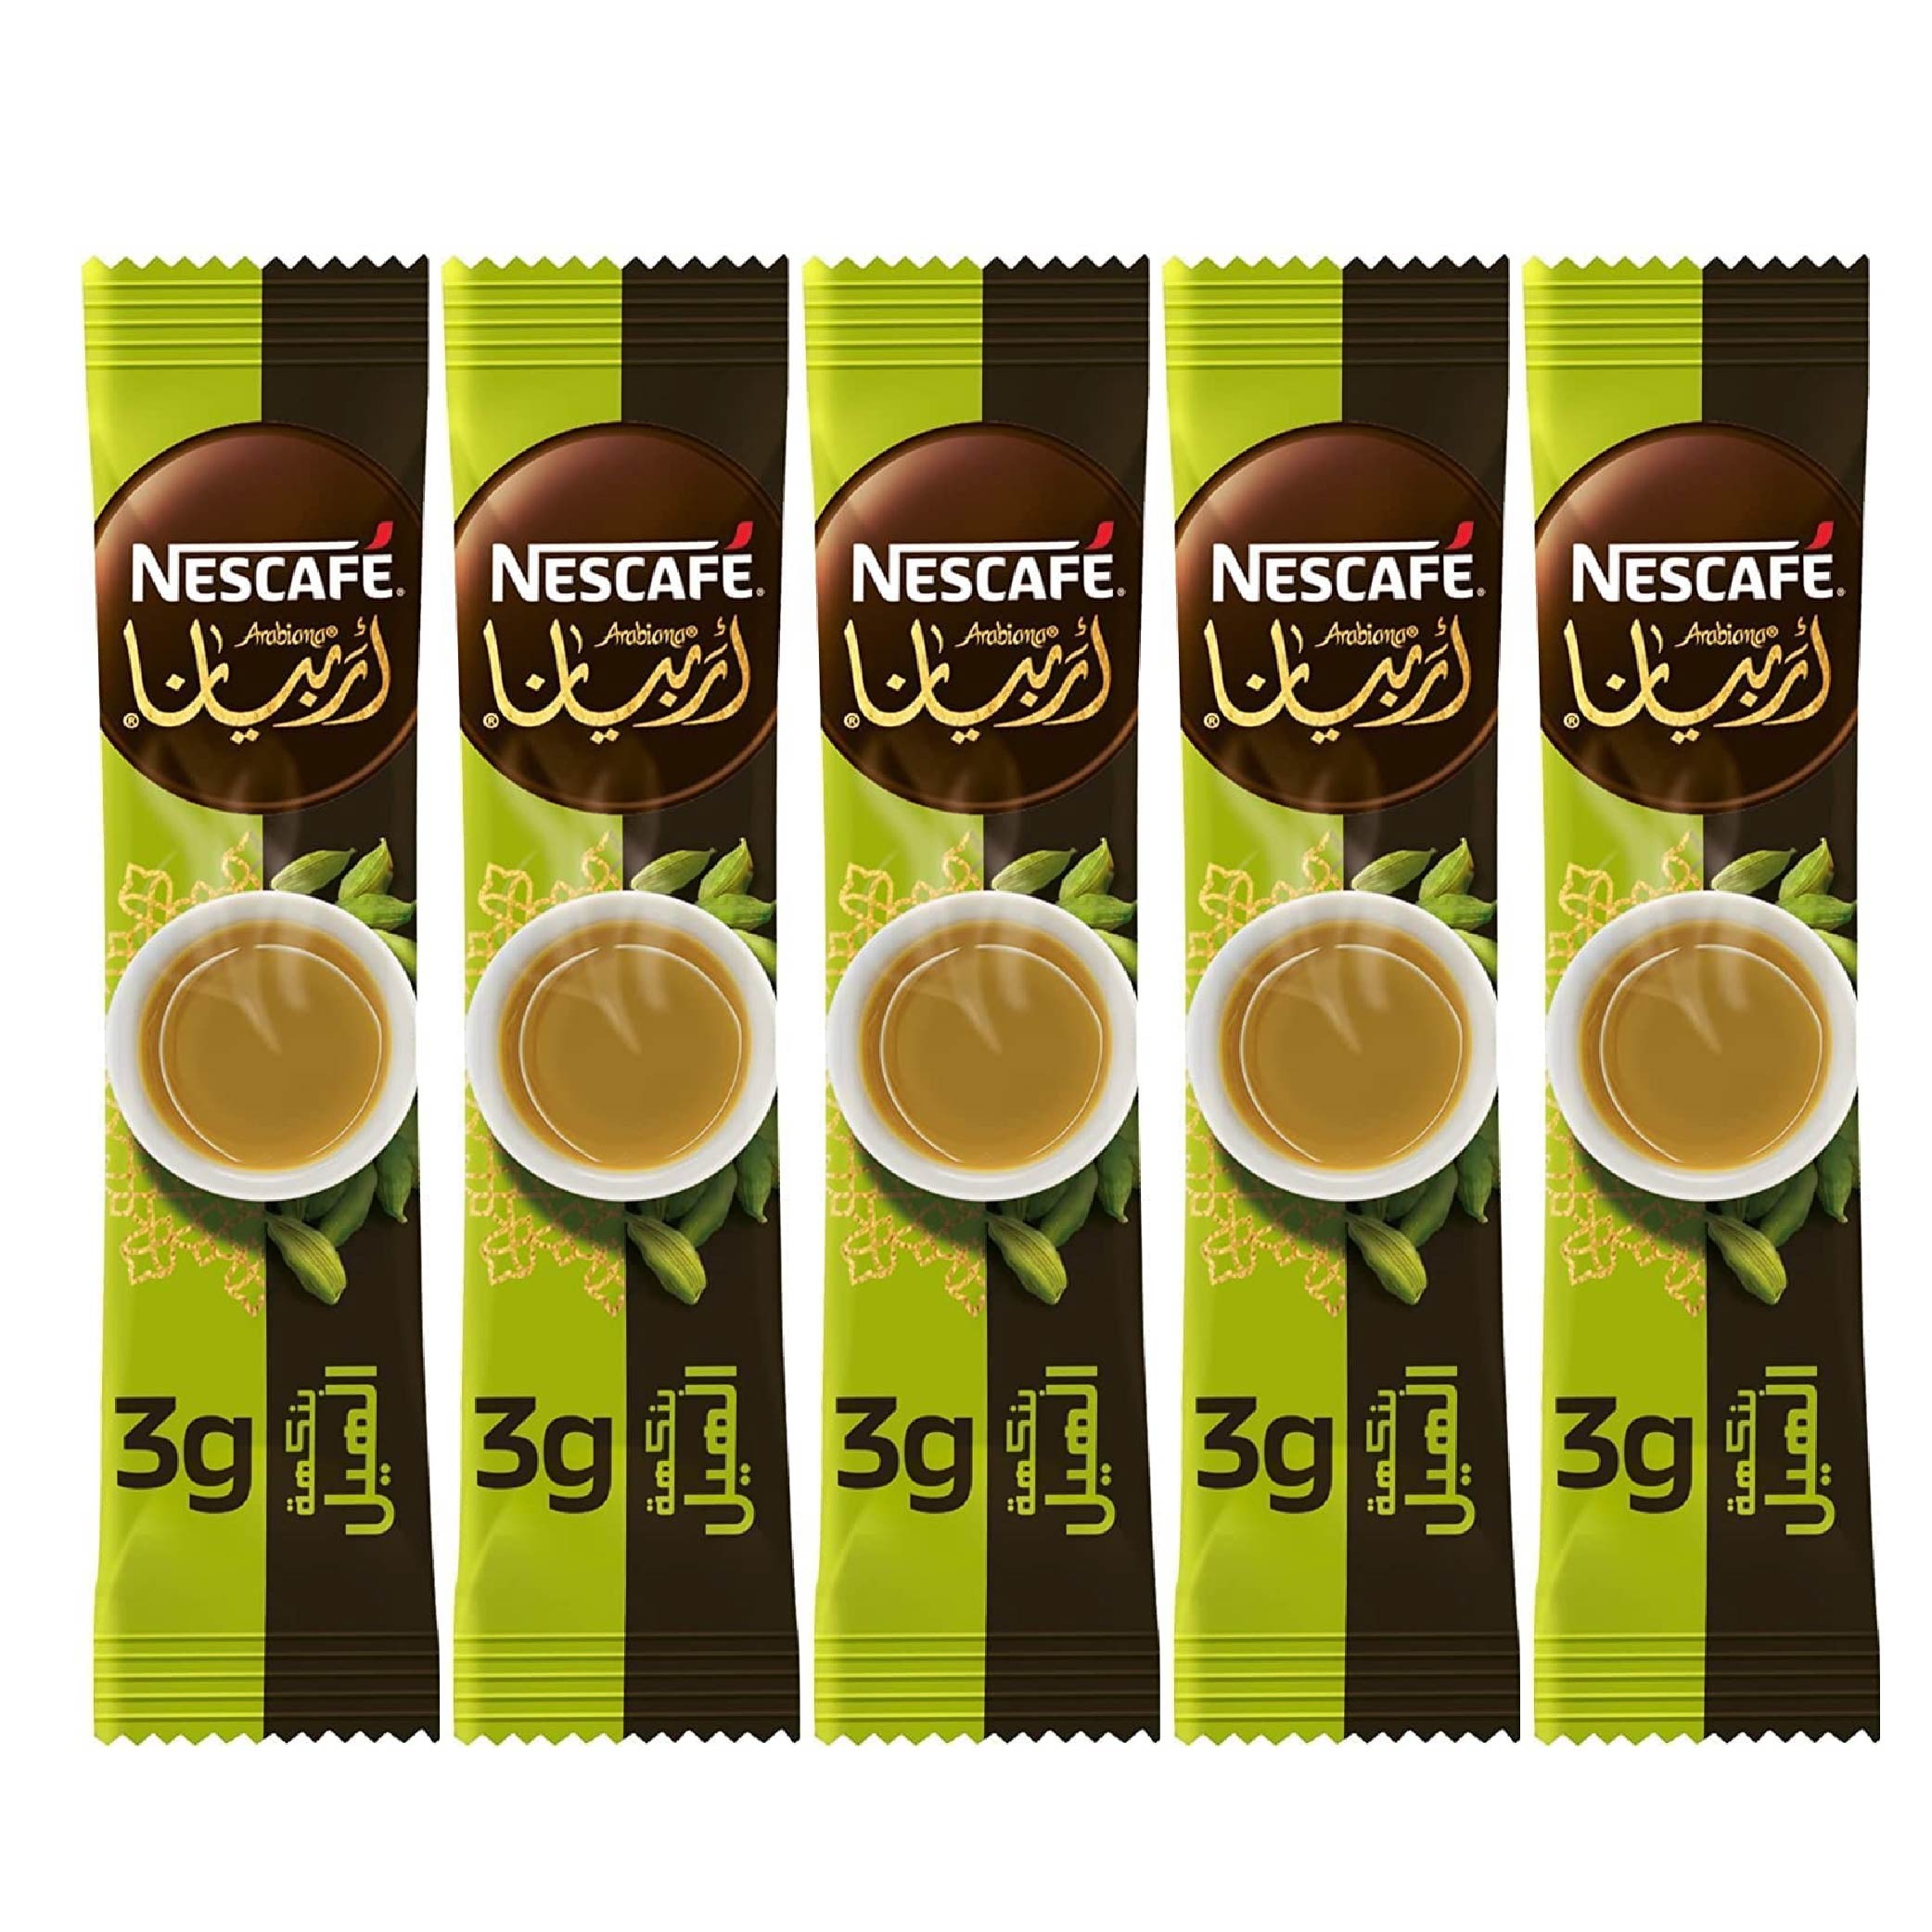 NESTLE NESCAFE CINNAMON FLAVORED ARABIC COFFEE 5 STICKS